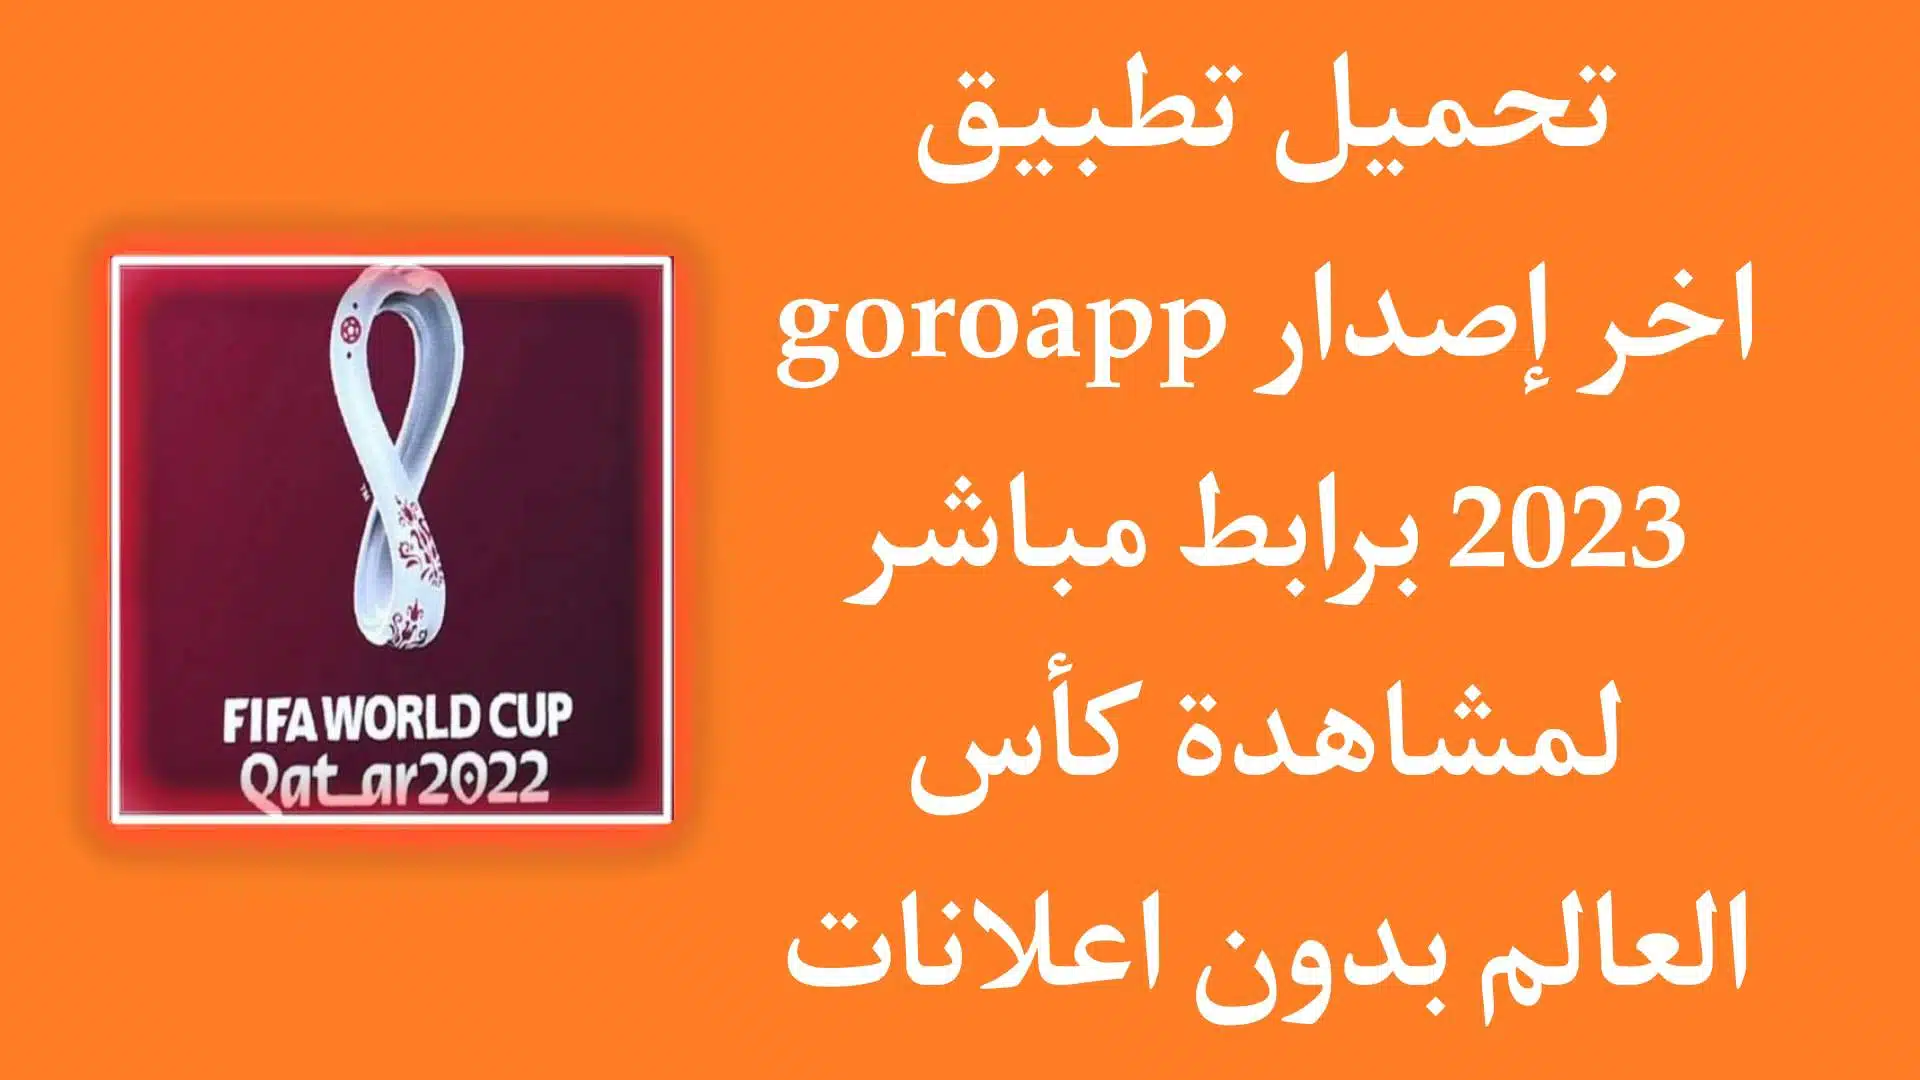 تحميل تطبيق goroapp لمشاهدة كأس العالم 2022 بدون تقطيع مجانا